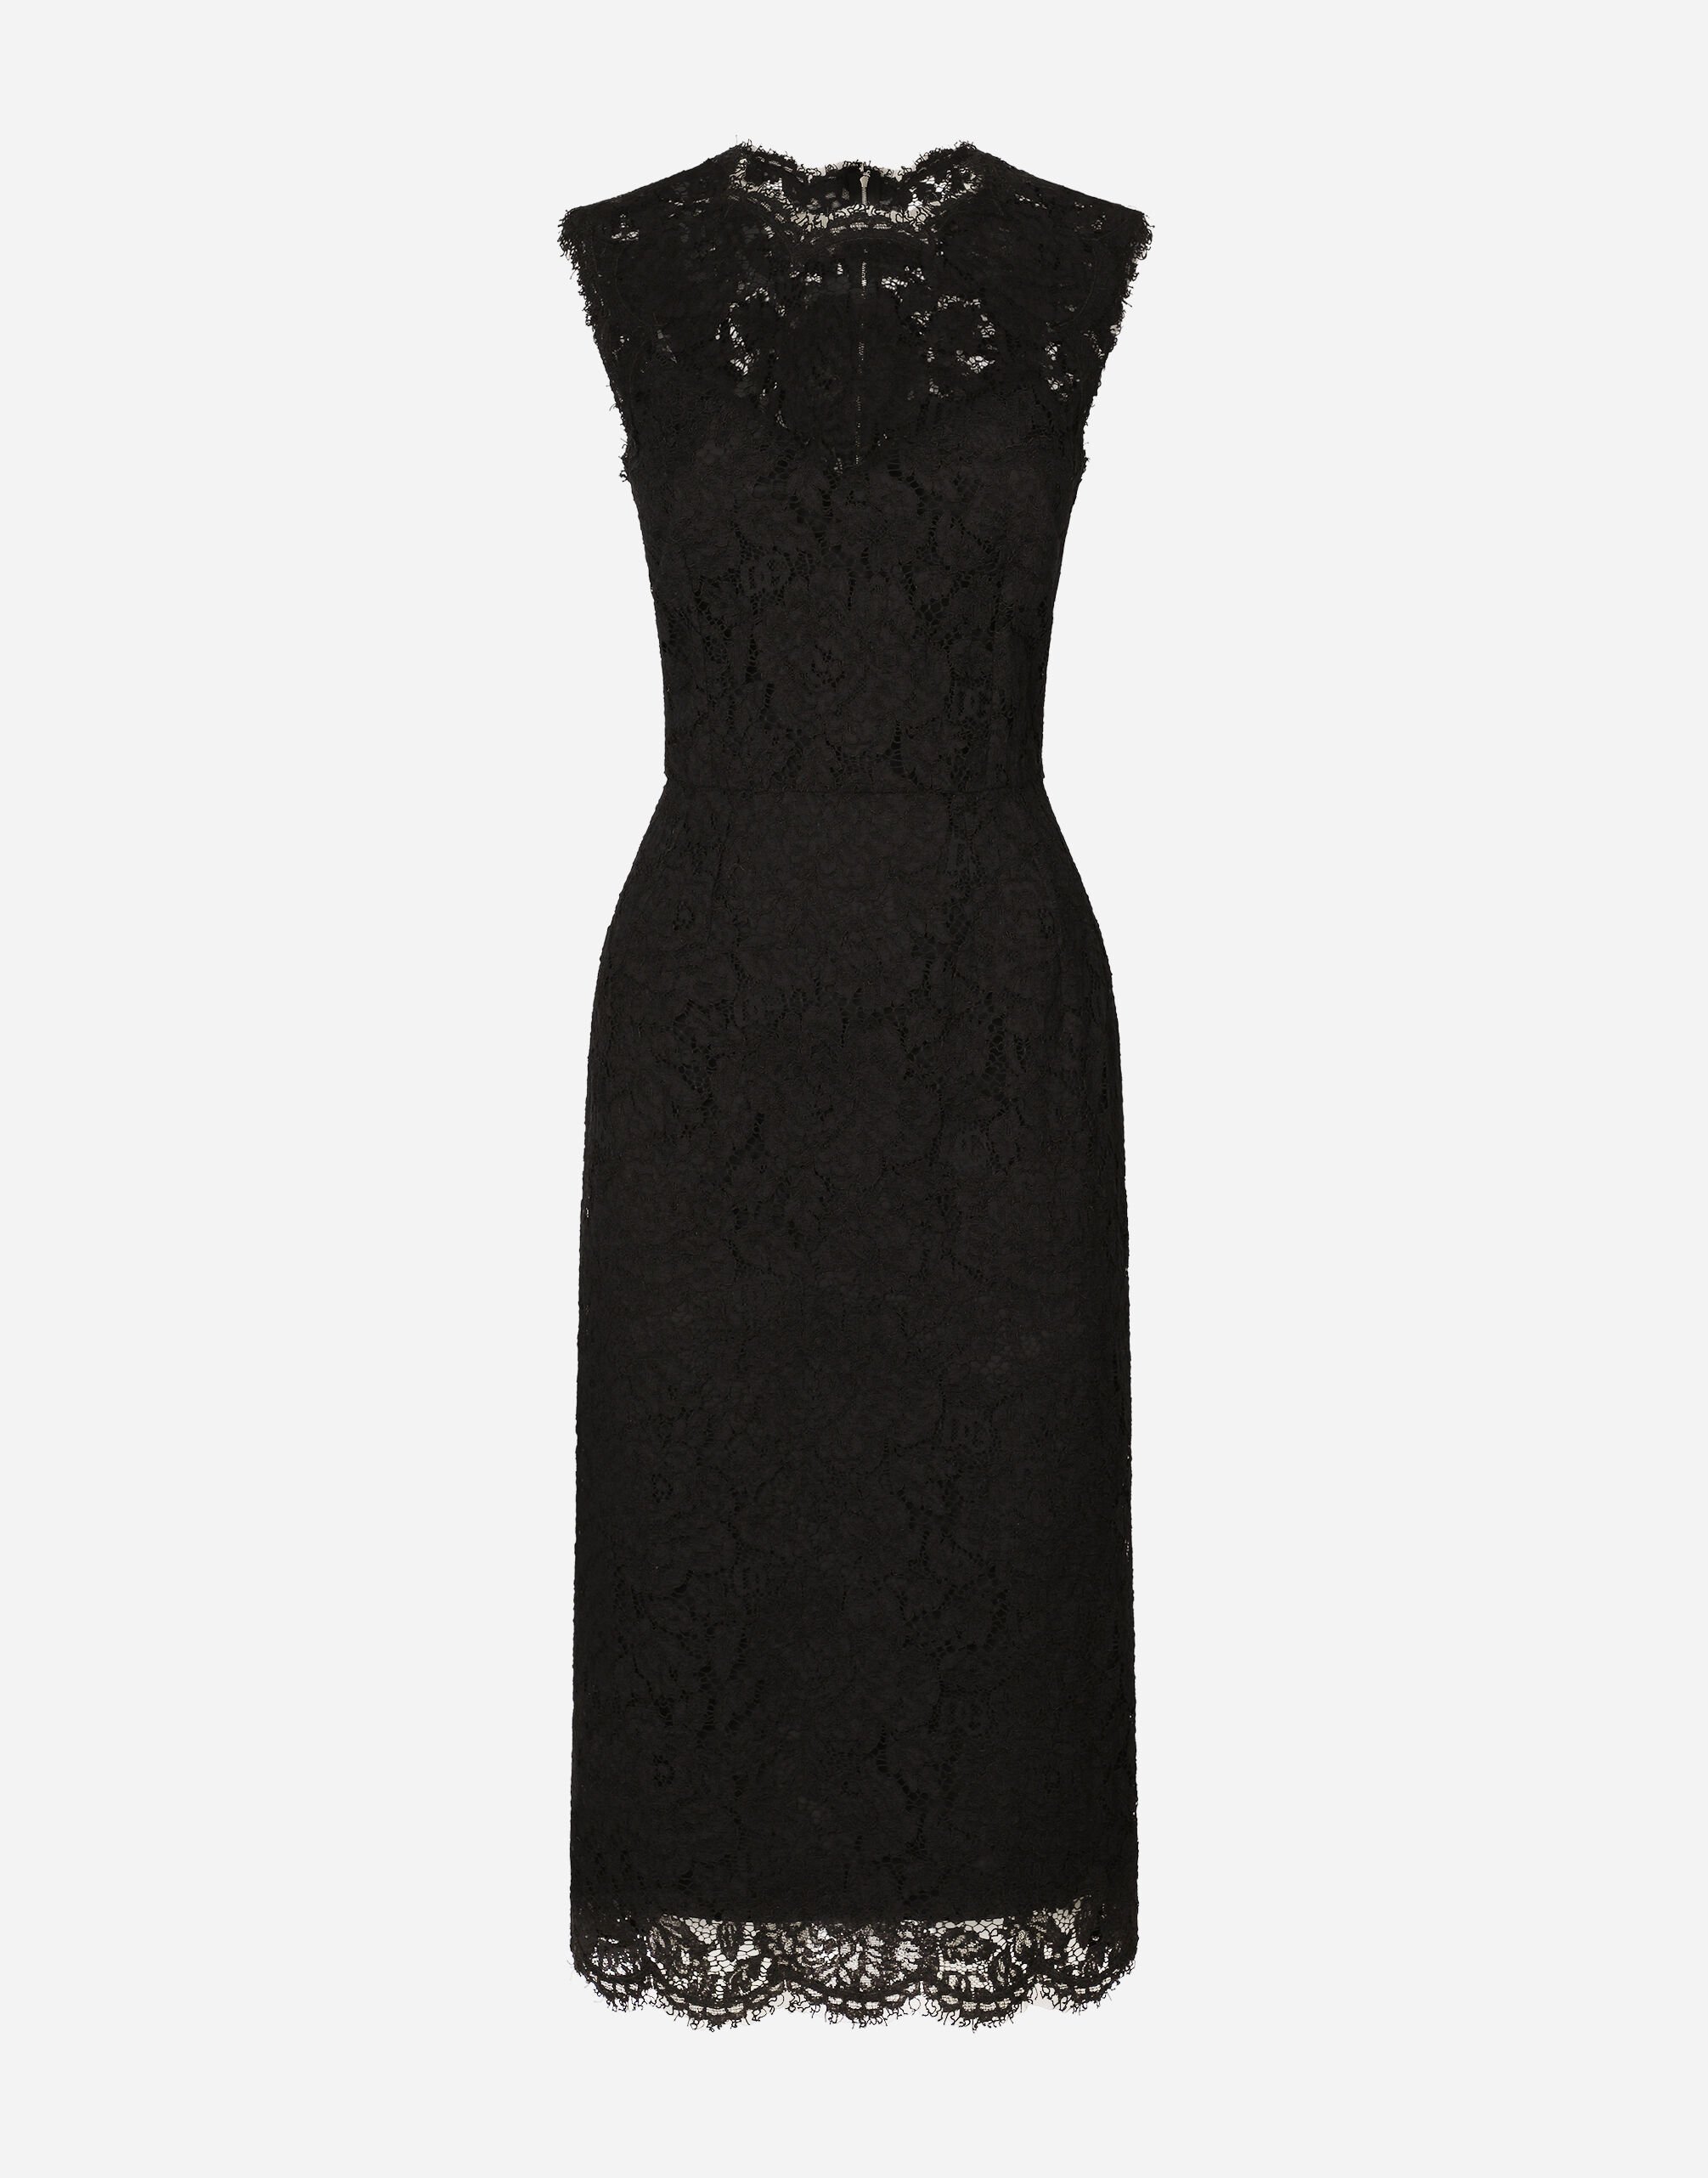 Dolce & Gabbana Branded stretch lace calf-length dress 405 Devotion MKUPLIP0009